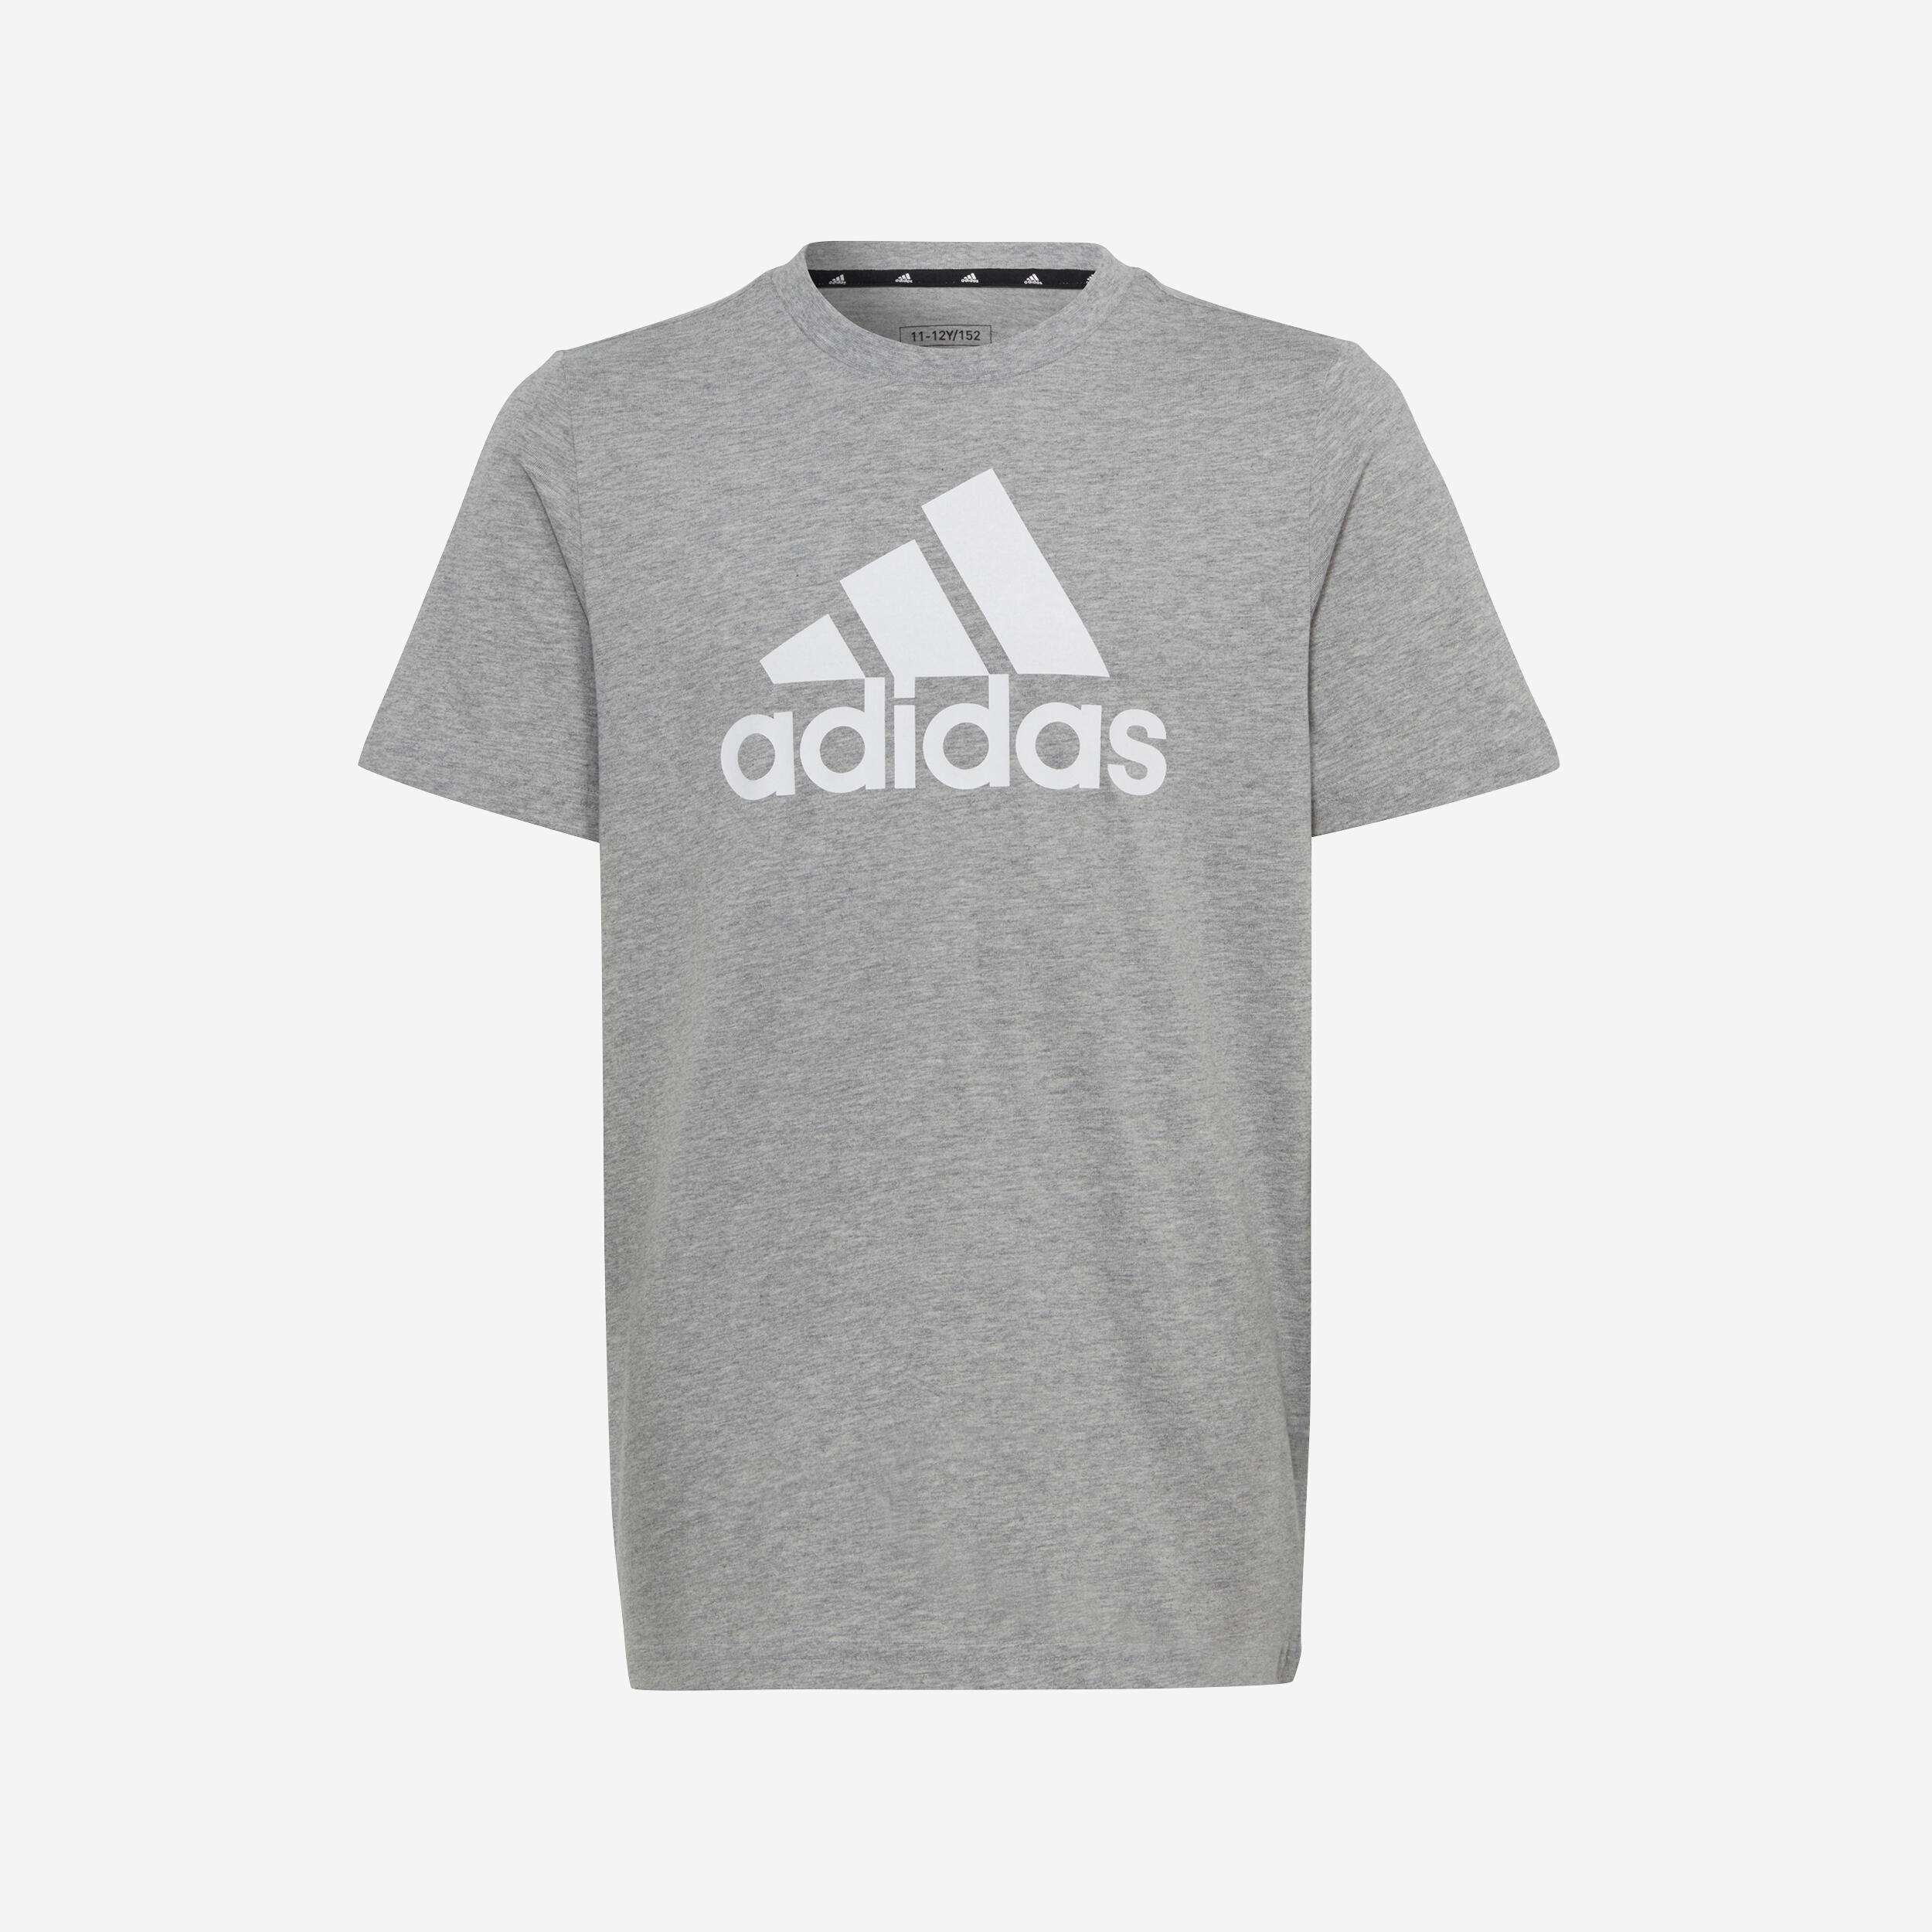 Kids' T-Shirt - Grey/White Printed Logo 1/5